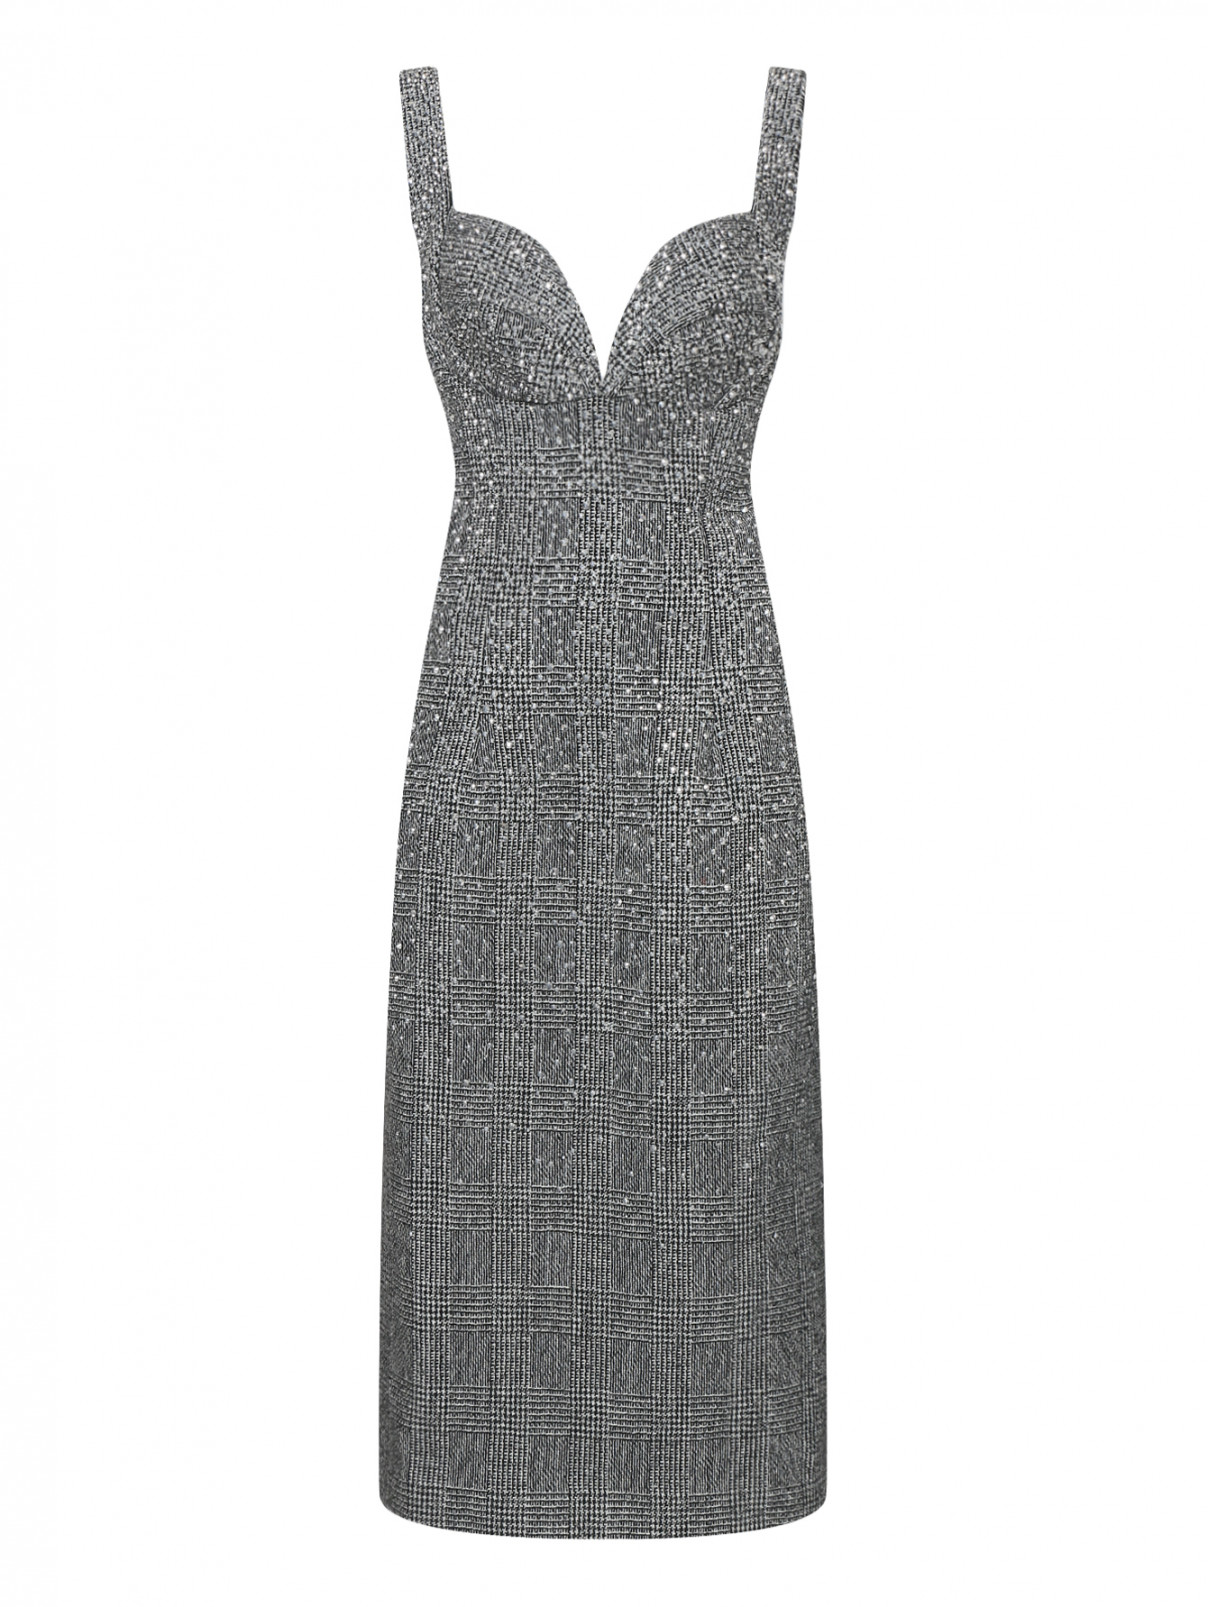 Платье из шерсти и льна декорированное стразами Ermanno Scervino  –  Общий вид  – Цвет:  Серый